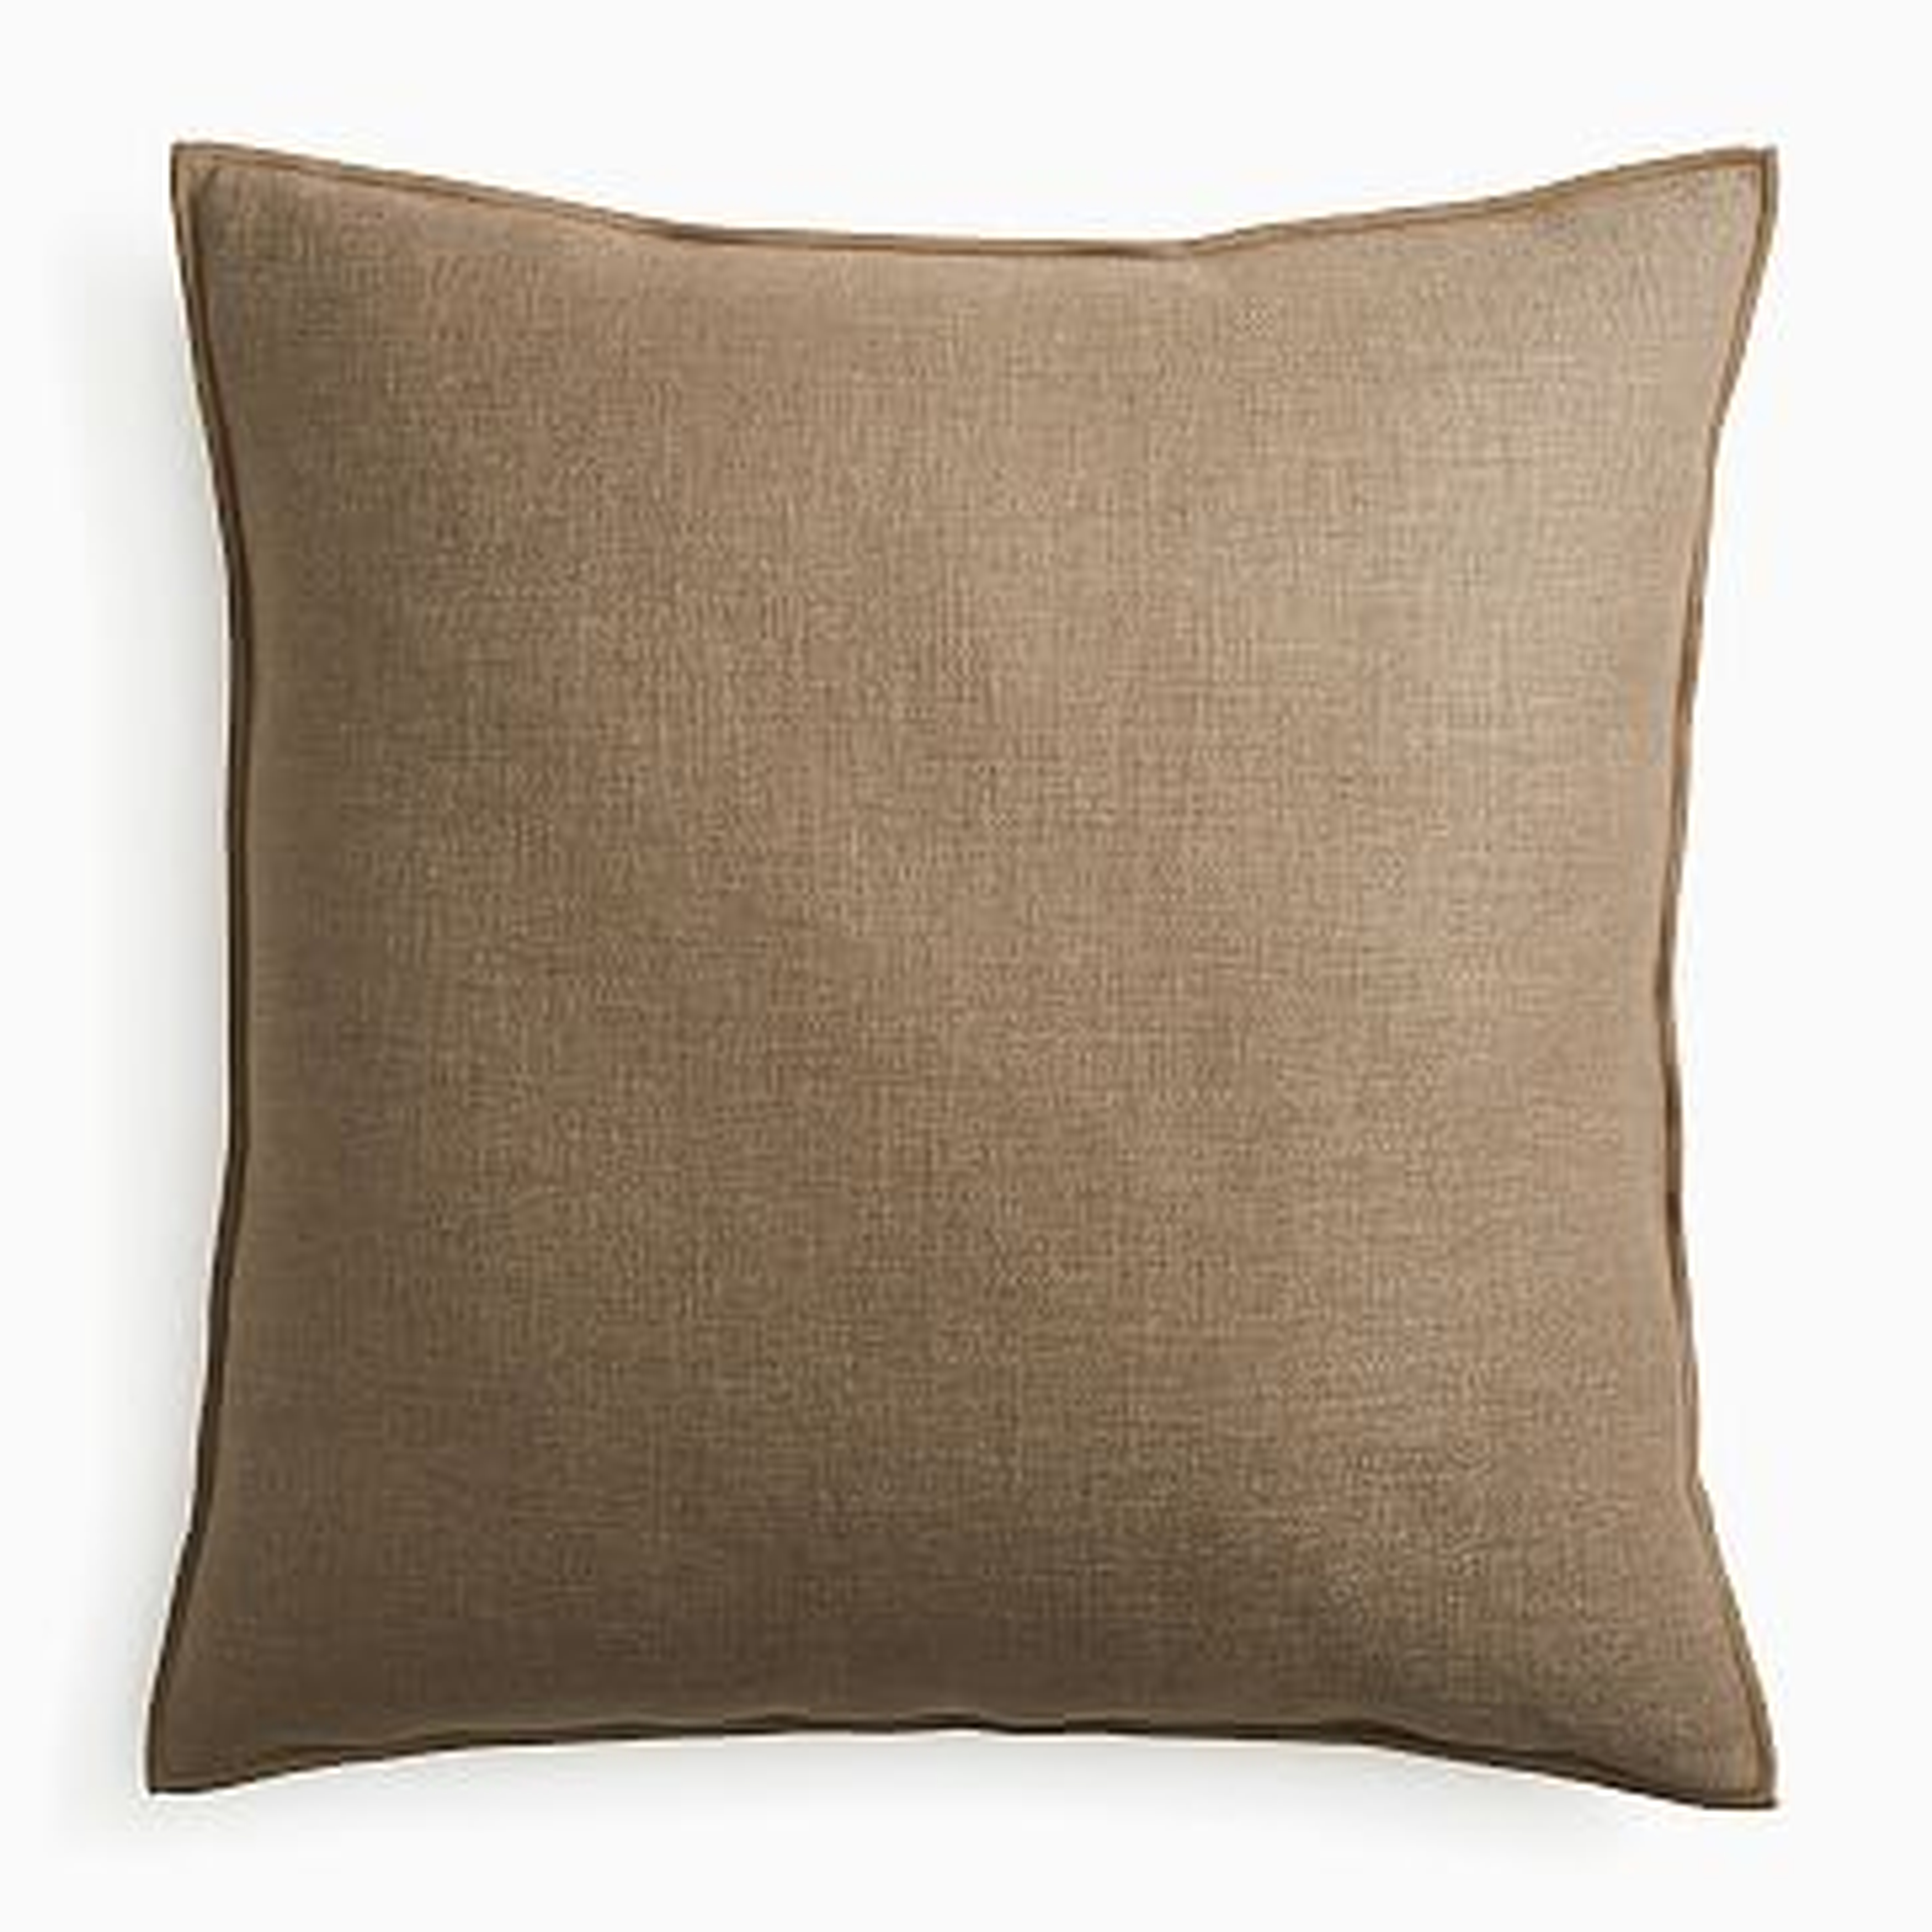 Classic Linen Pillow Cover, 24"x24", Mocha, Set of 2 - West Elm